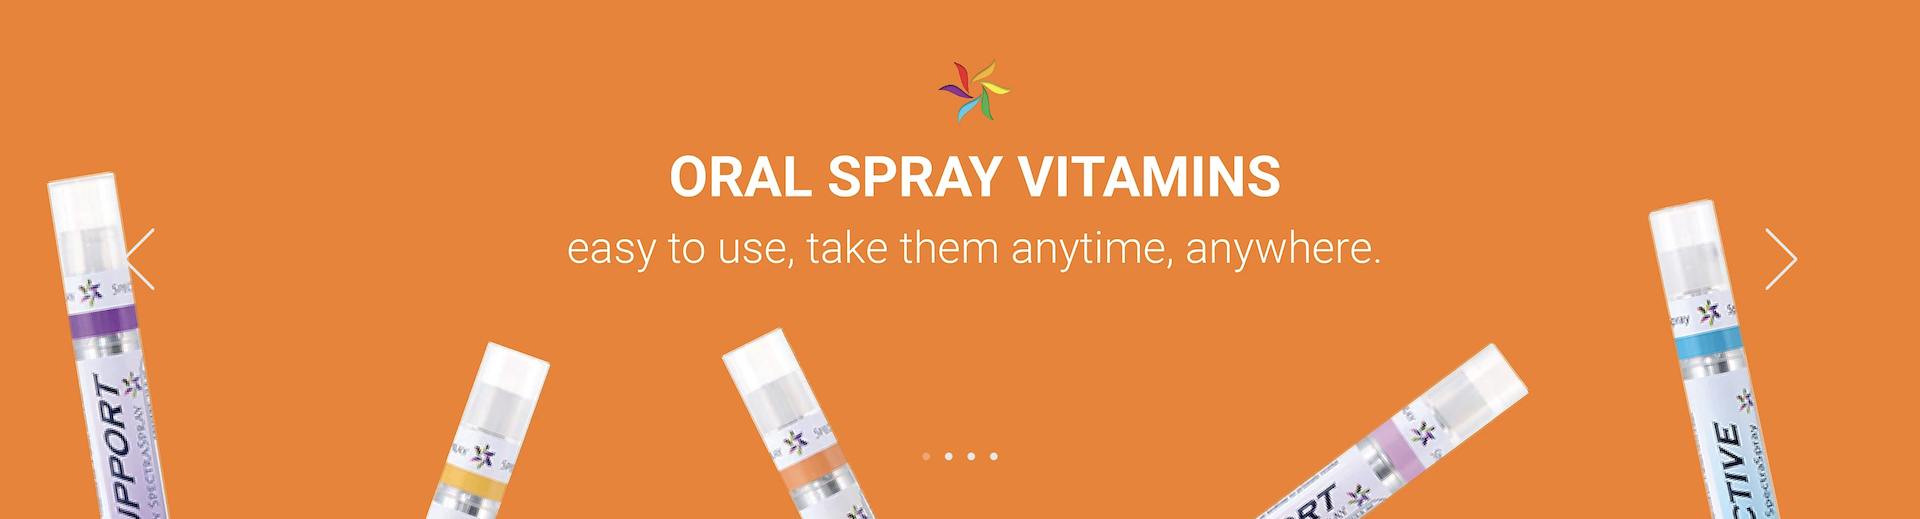 SpectraSpray Oral Spray Vitamins.jpg